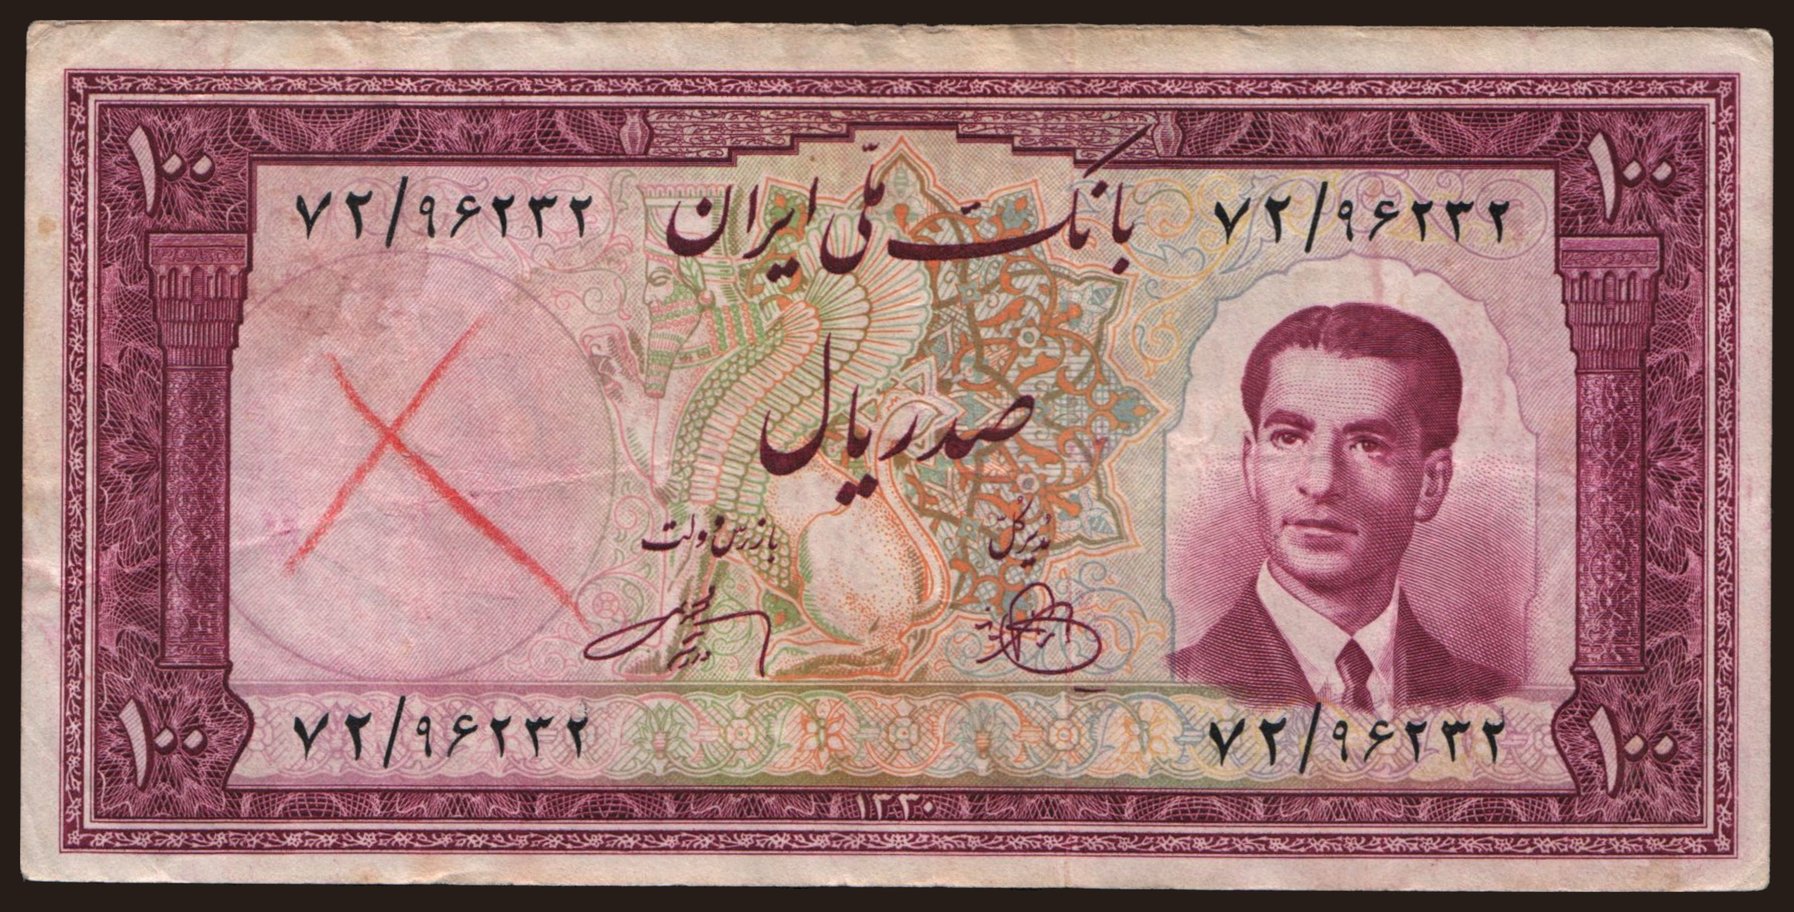 100 rials, 1951